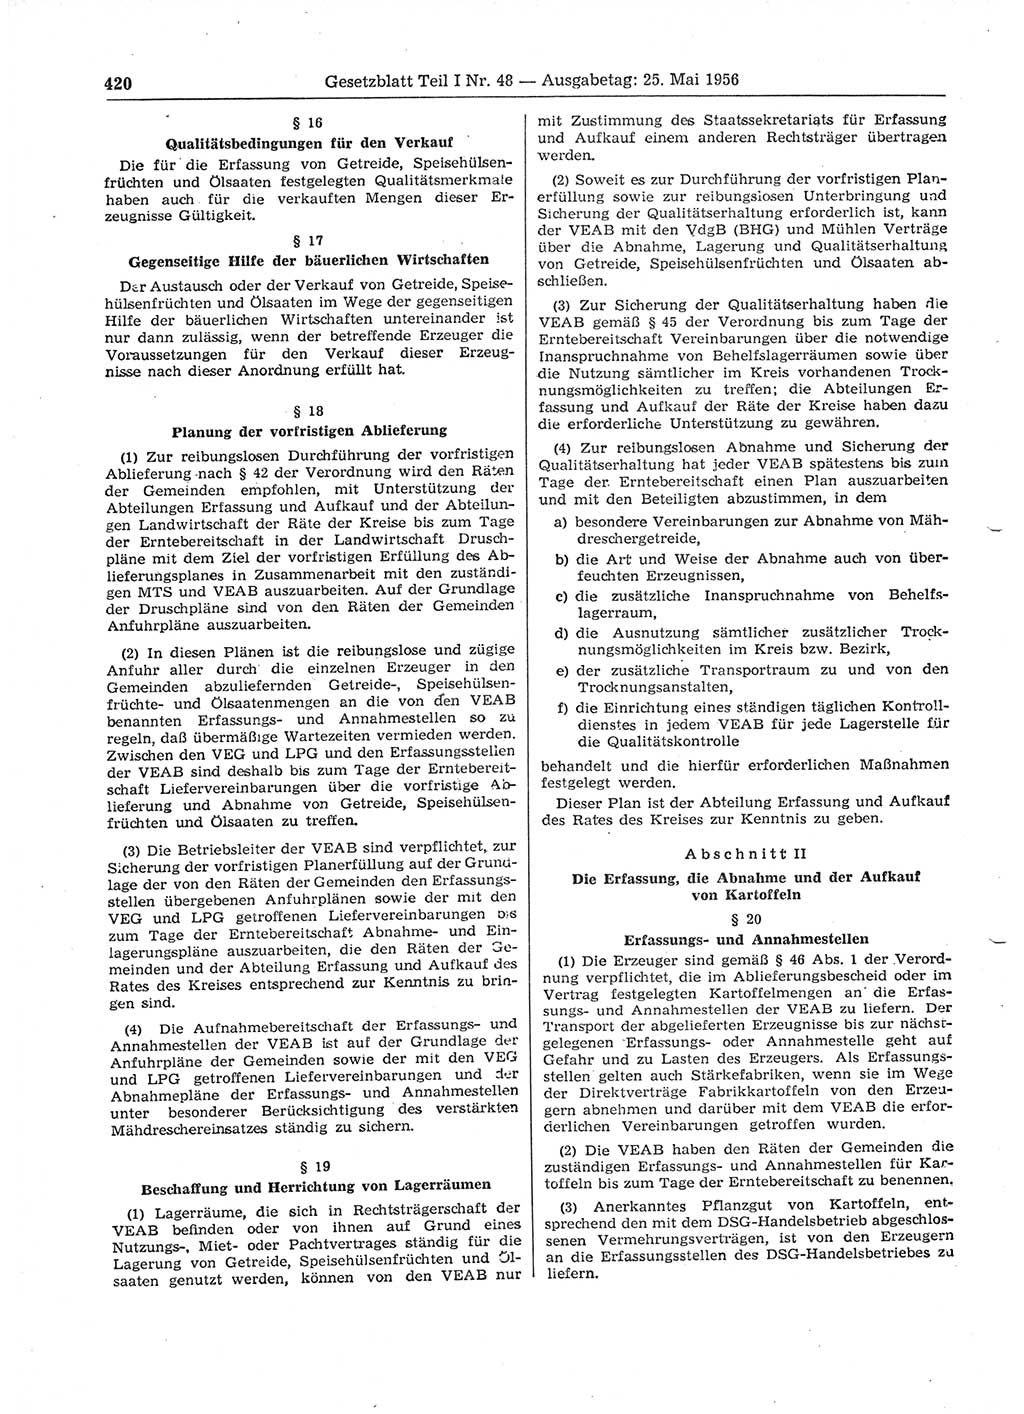 Gesetzblatt (GBl.) der Deutschen Demokratischen Republik (DDR) Teil Ⅰ 1956, Seite 420 (GBl. DDR Ⅰ 1956, S. 420)